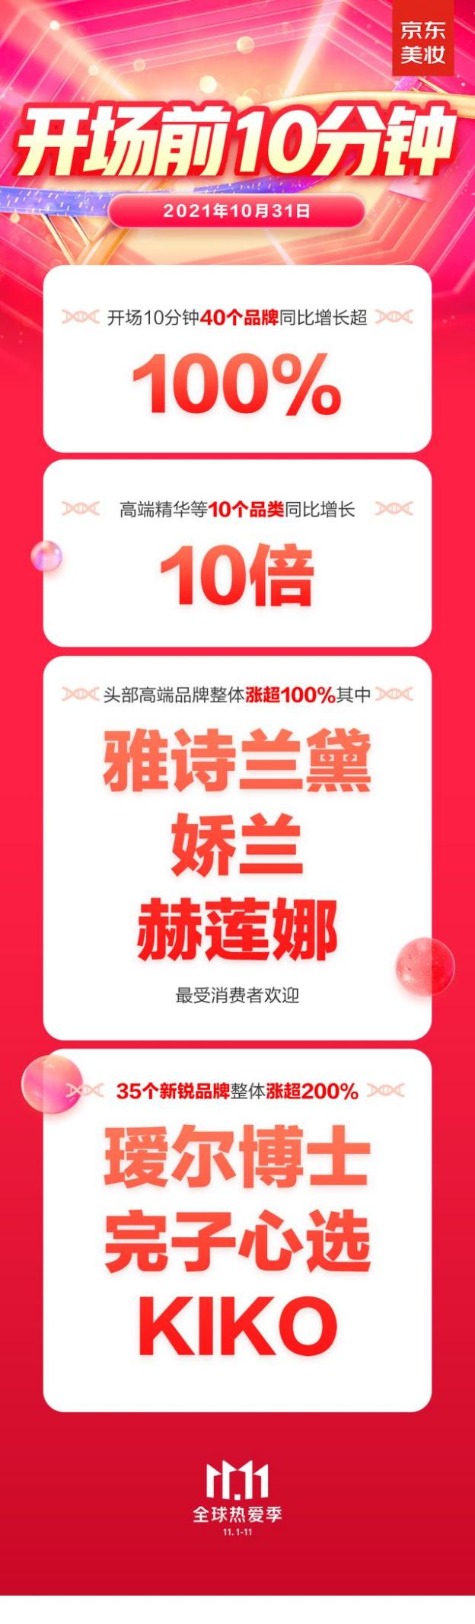 京东美妆11.11高端大牌迎来开门红40个品牌同比增长超100%